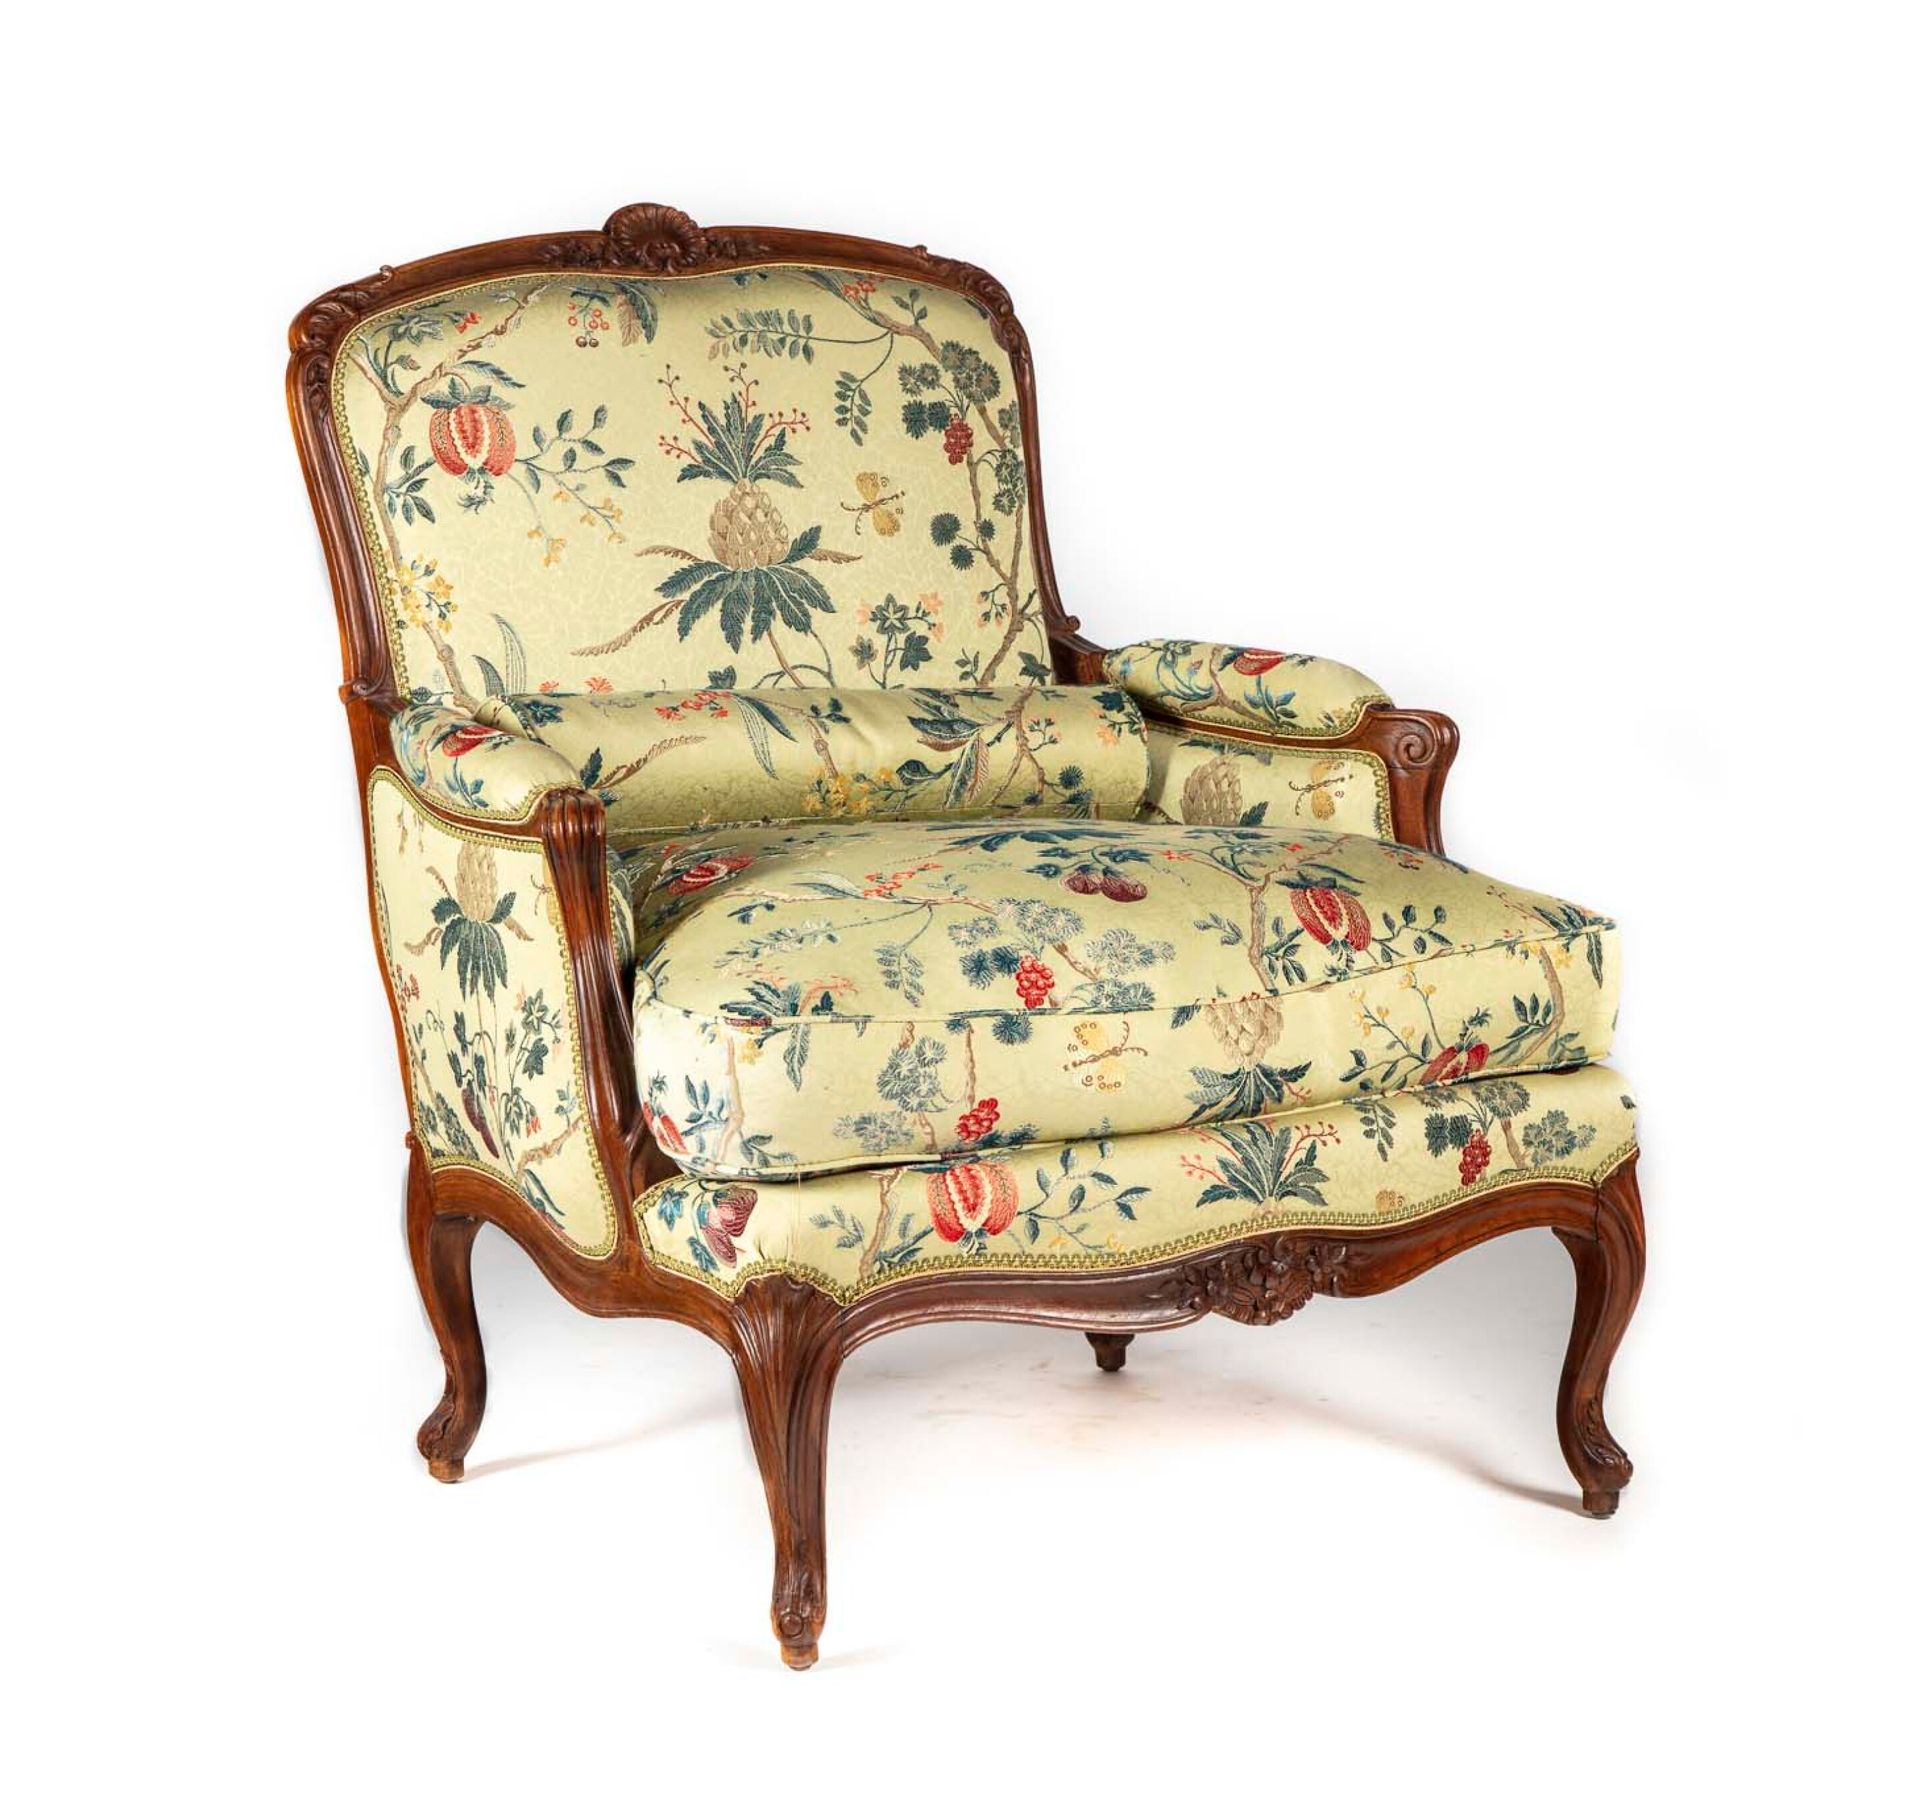 Null 模制、雕刻和着色的胡桃木扶手椅，平背，装饰有叶子、花和贝壳，靠在拱形腿上

路易十五风格

H.98厘米；长：81厘米